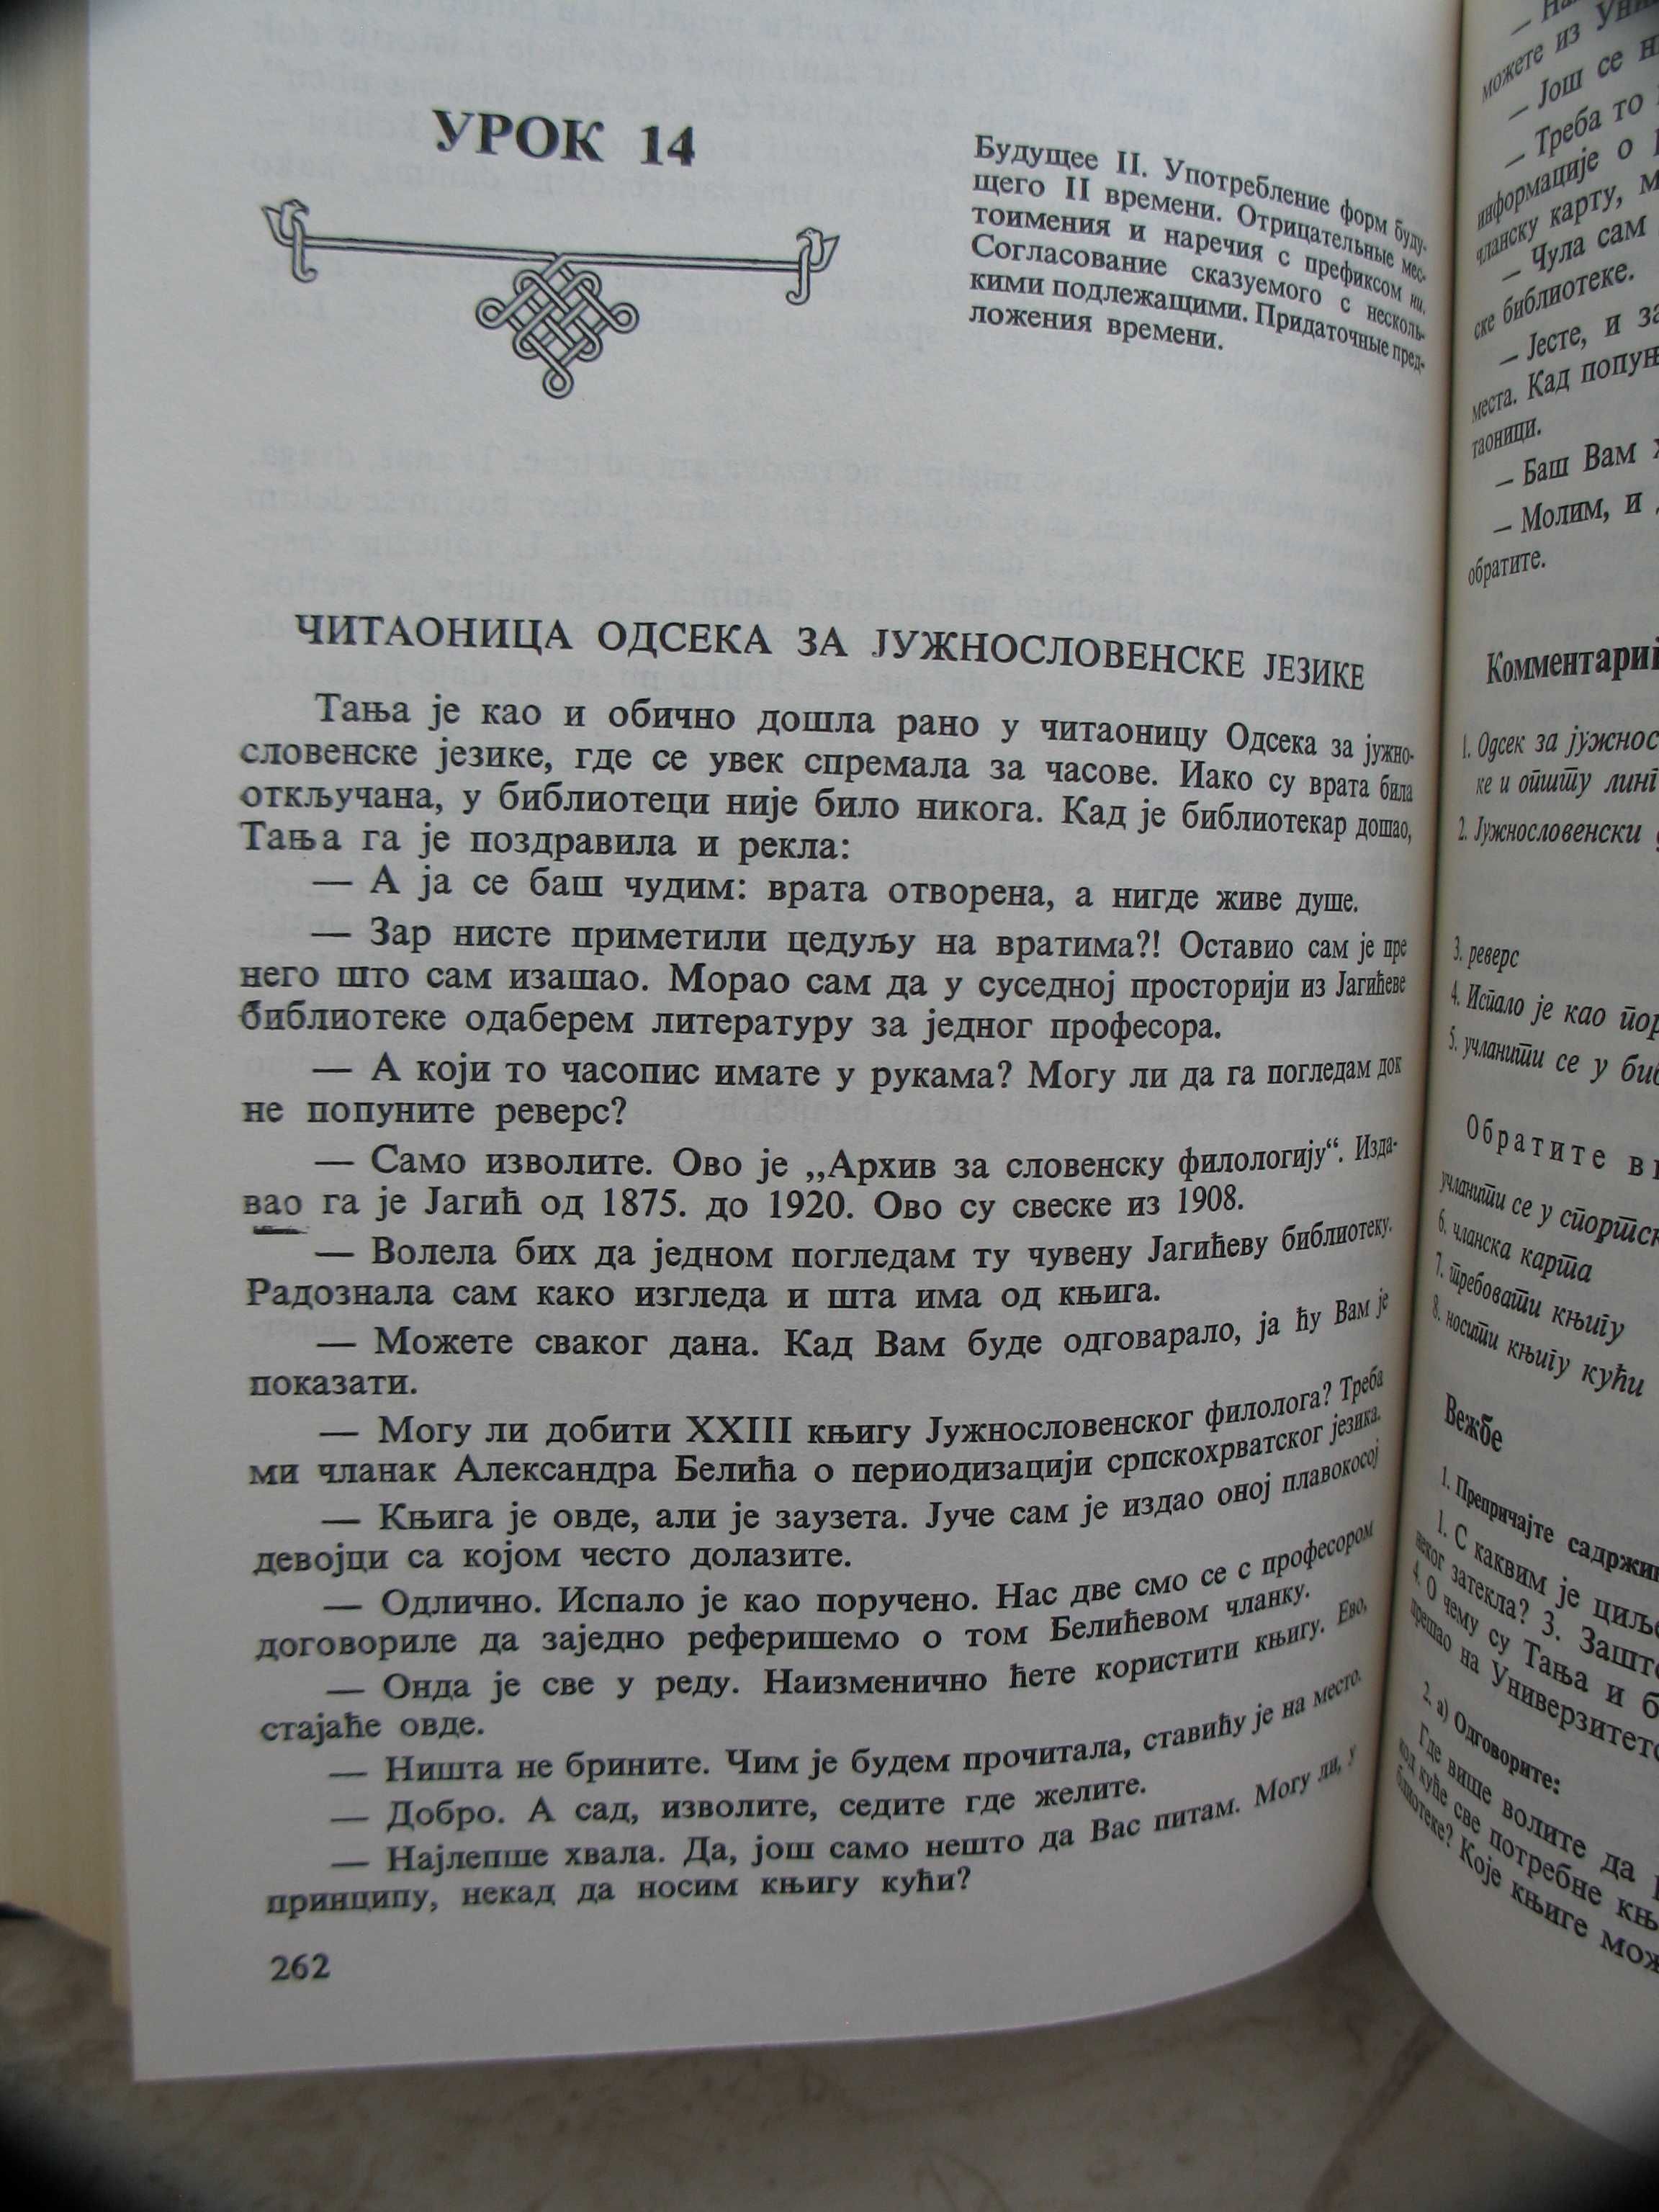 "Учебник сербо-хорватского языка" 1986 год, тираж 5 650